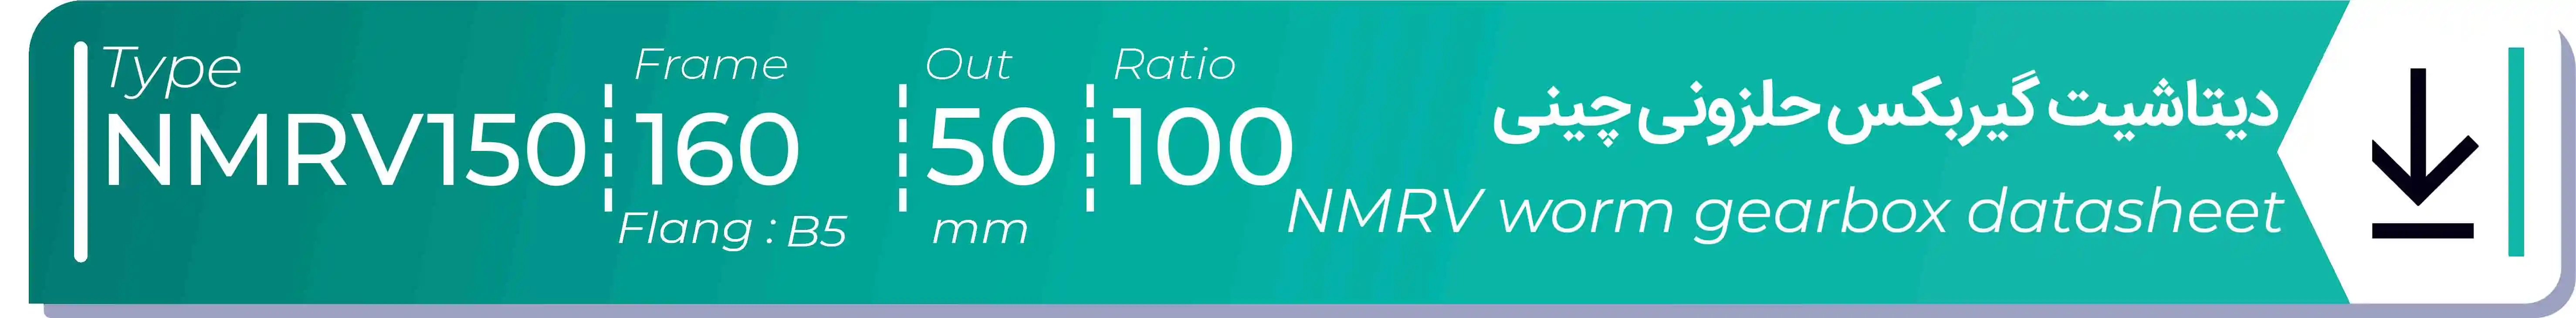  دیتاشیت و مشخصات فنی گیربکس حلزونی چینی   NMRV150  -  با خروجی 50- میلی متر و نسبت100 و فریم 160